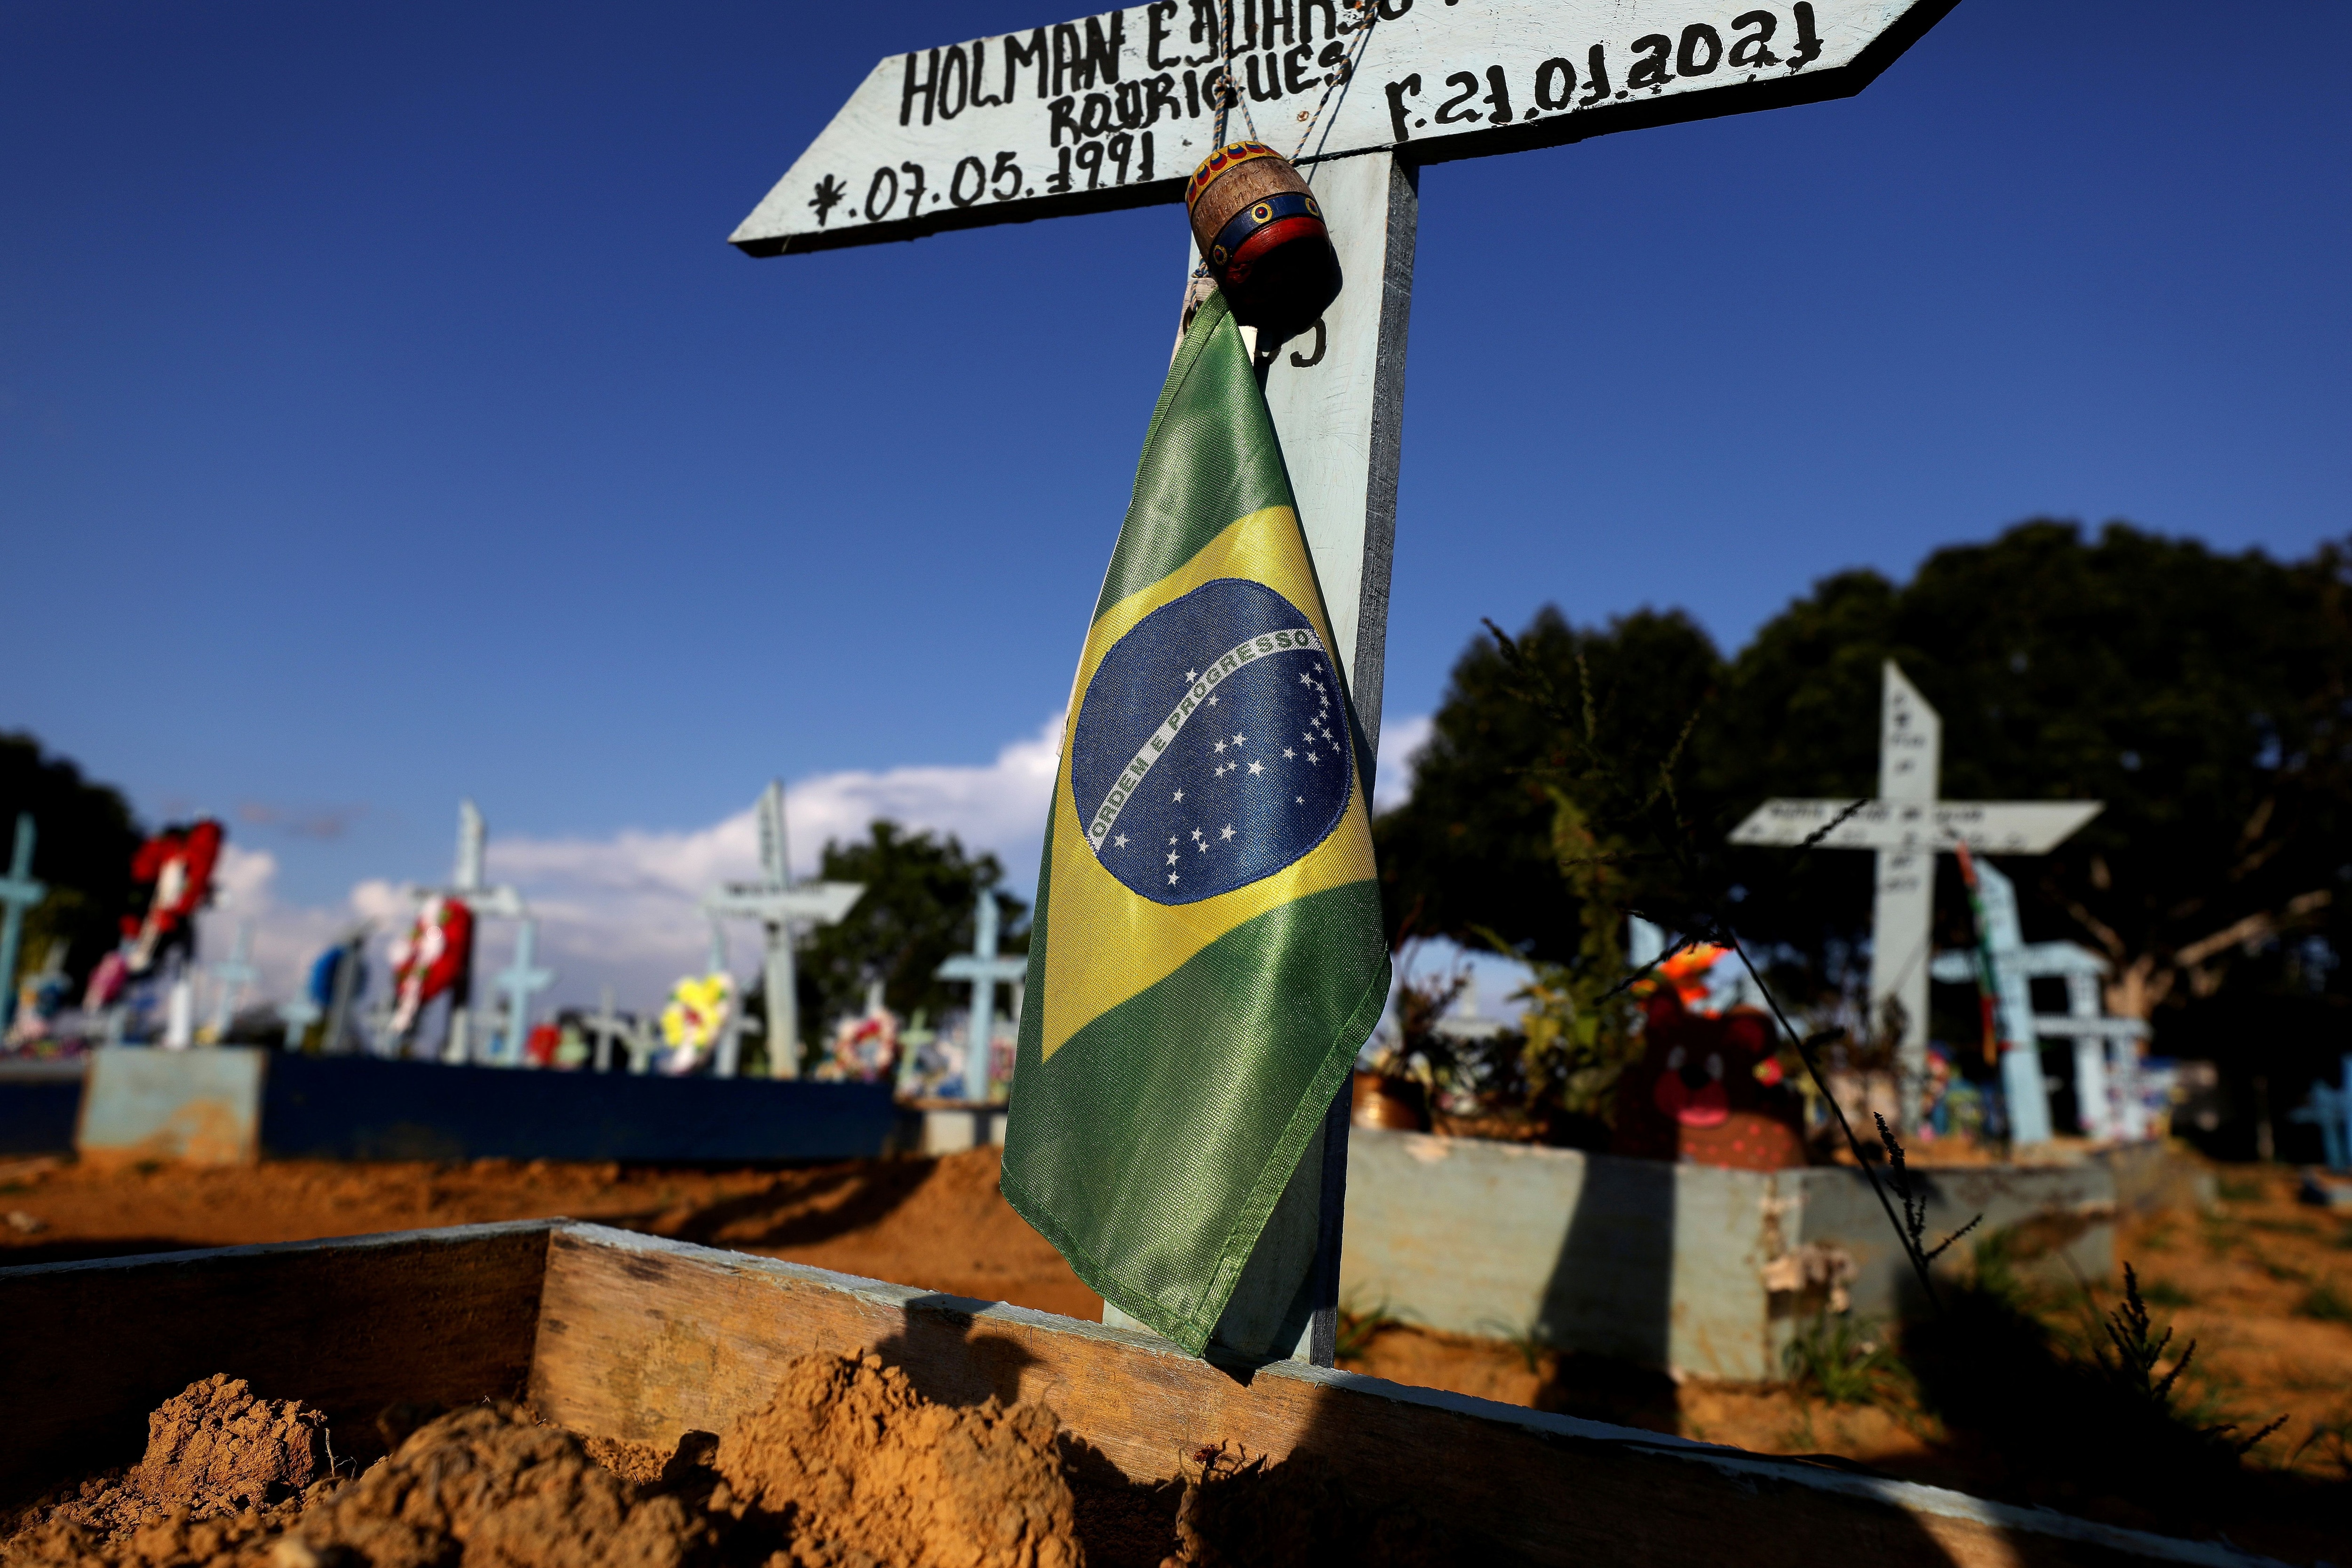  Una bandera nacional brasileña se ve en la tumba de una persona que falleció debido a la enfermedad del coronavirus (COVID-19) en el cementerio Parque Taruma en Manaus, Brasil 20 de mayo de 2021. REUTERS